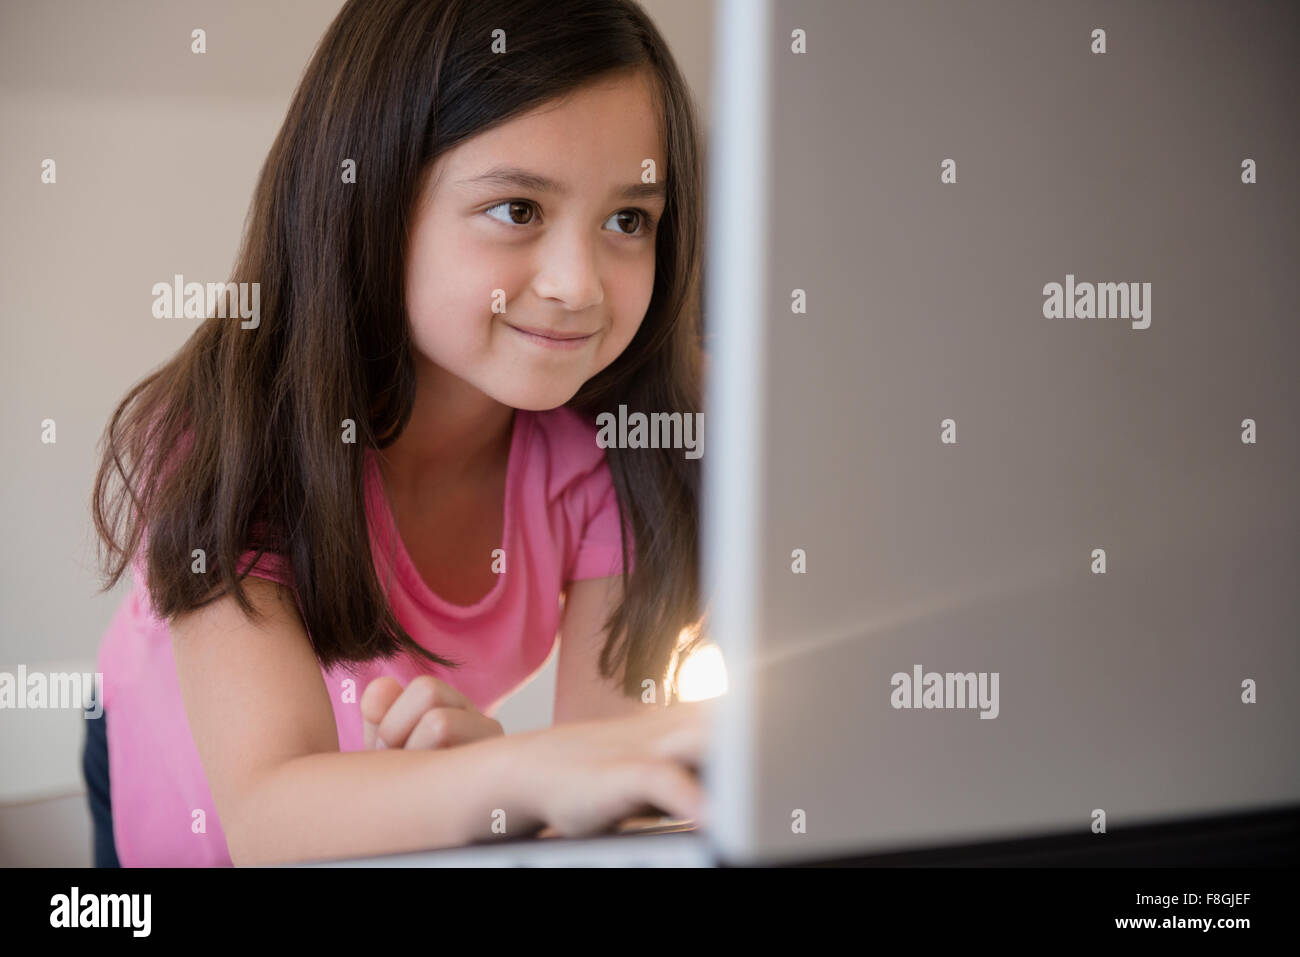 Smiling girl using laptop Stock Photo